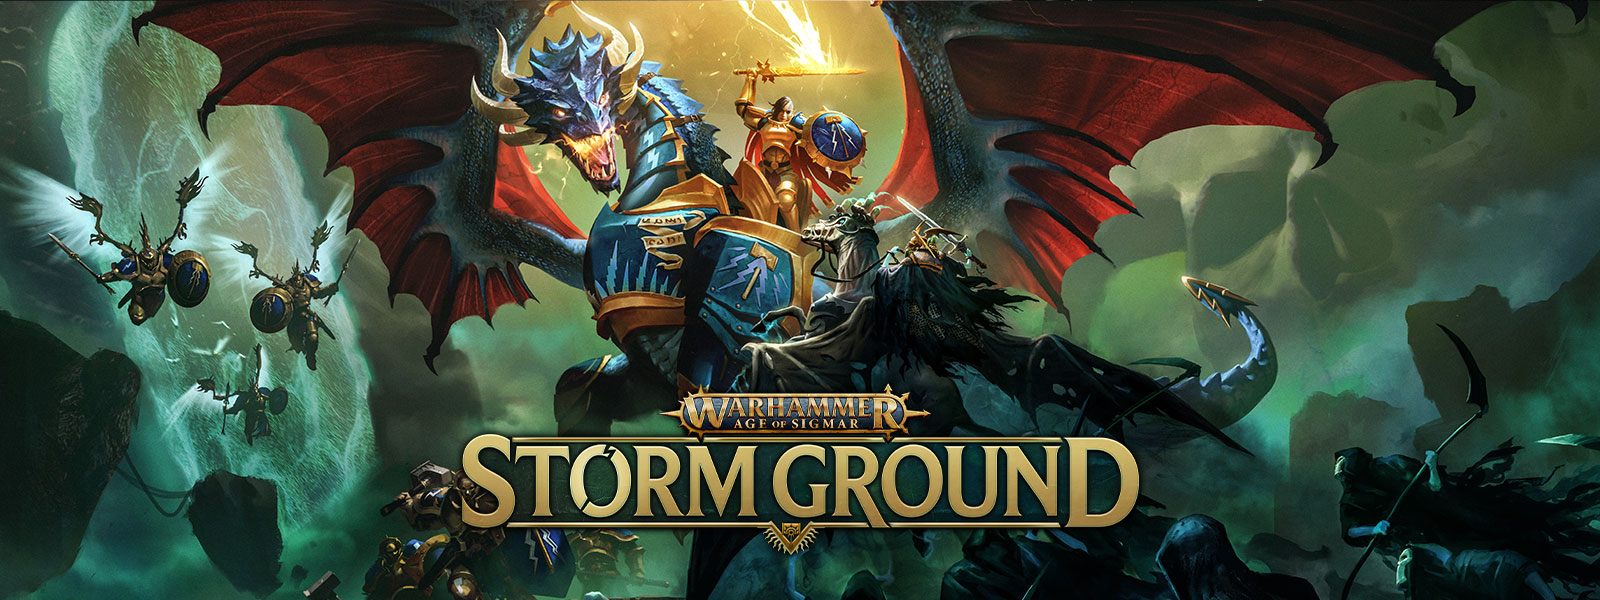 Warhammer Age of Sigmar: Storm Ground, Um guerreiro montado num dragão com armadura a voar luta contra um exército de esqueletos.